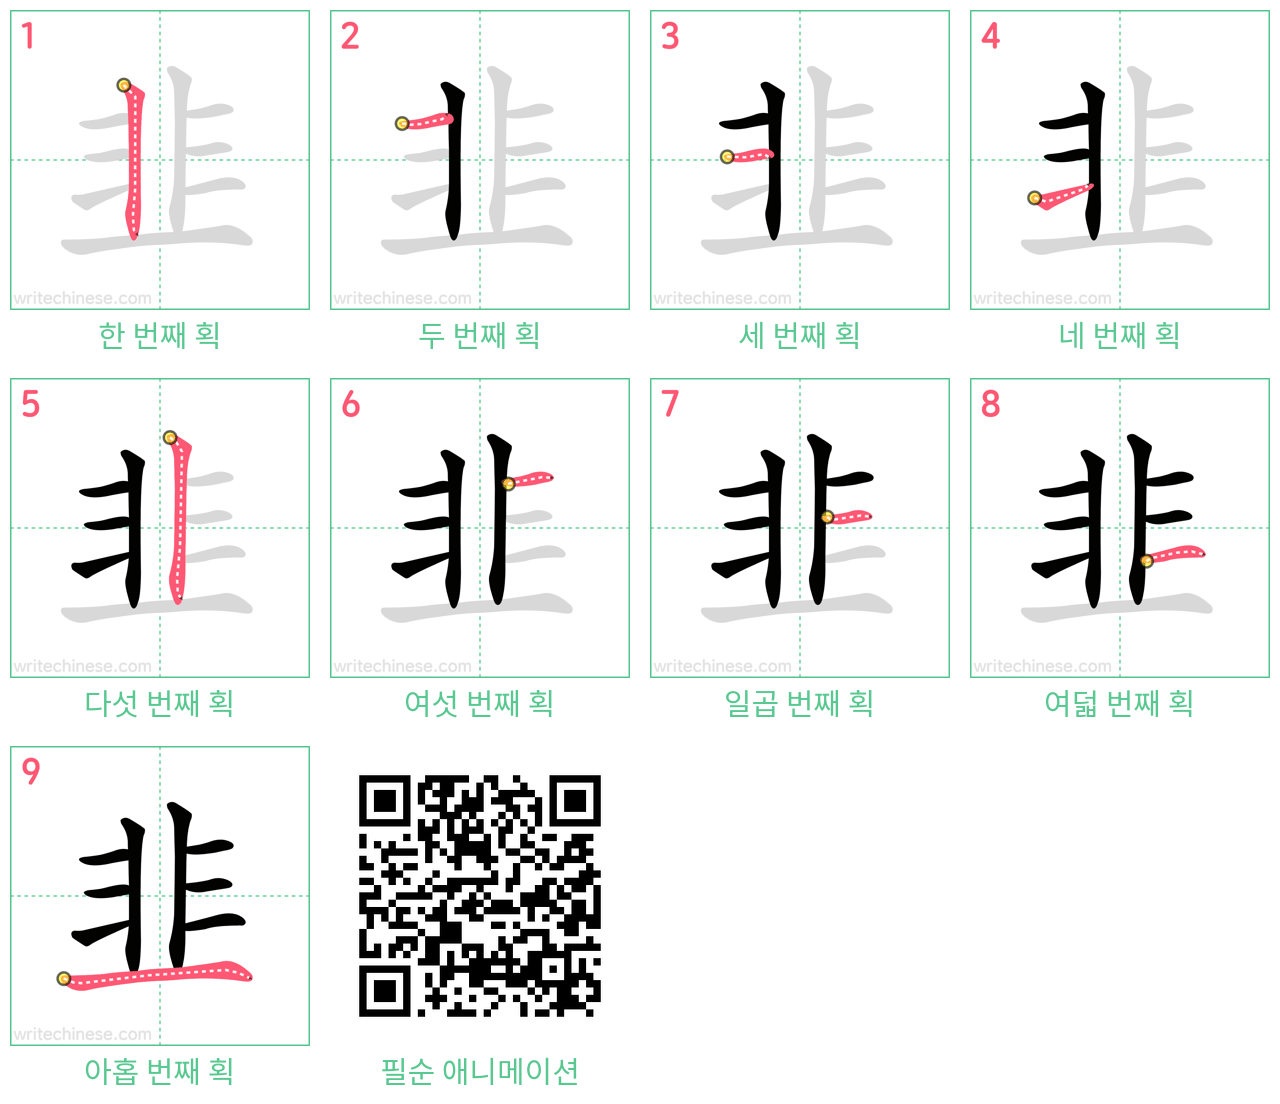 韭 step-by-step stroke order diagrams